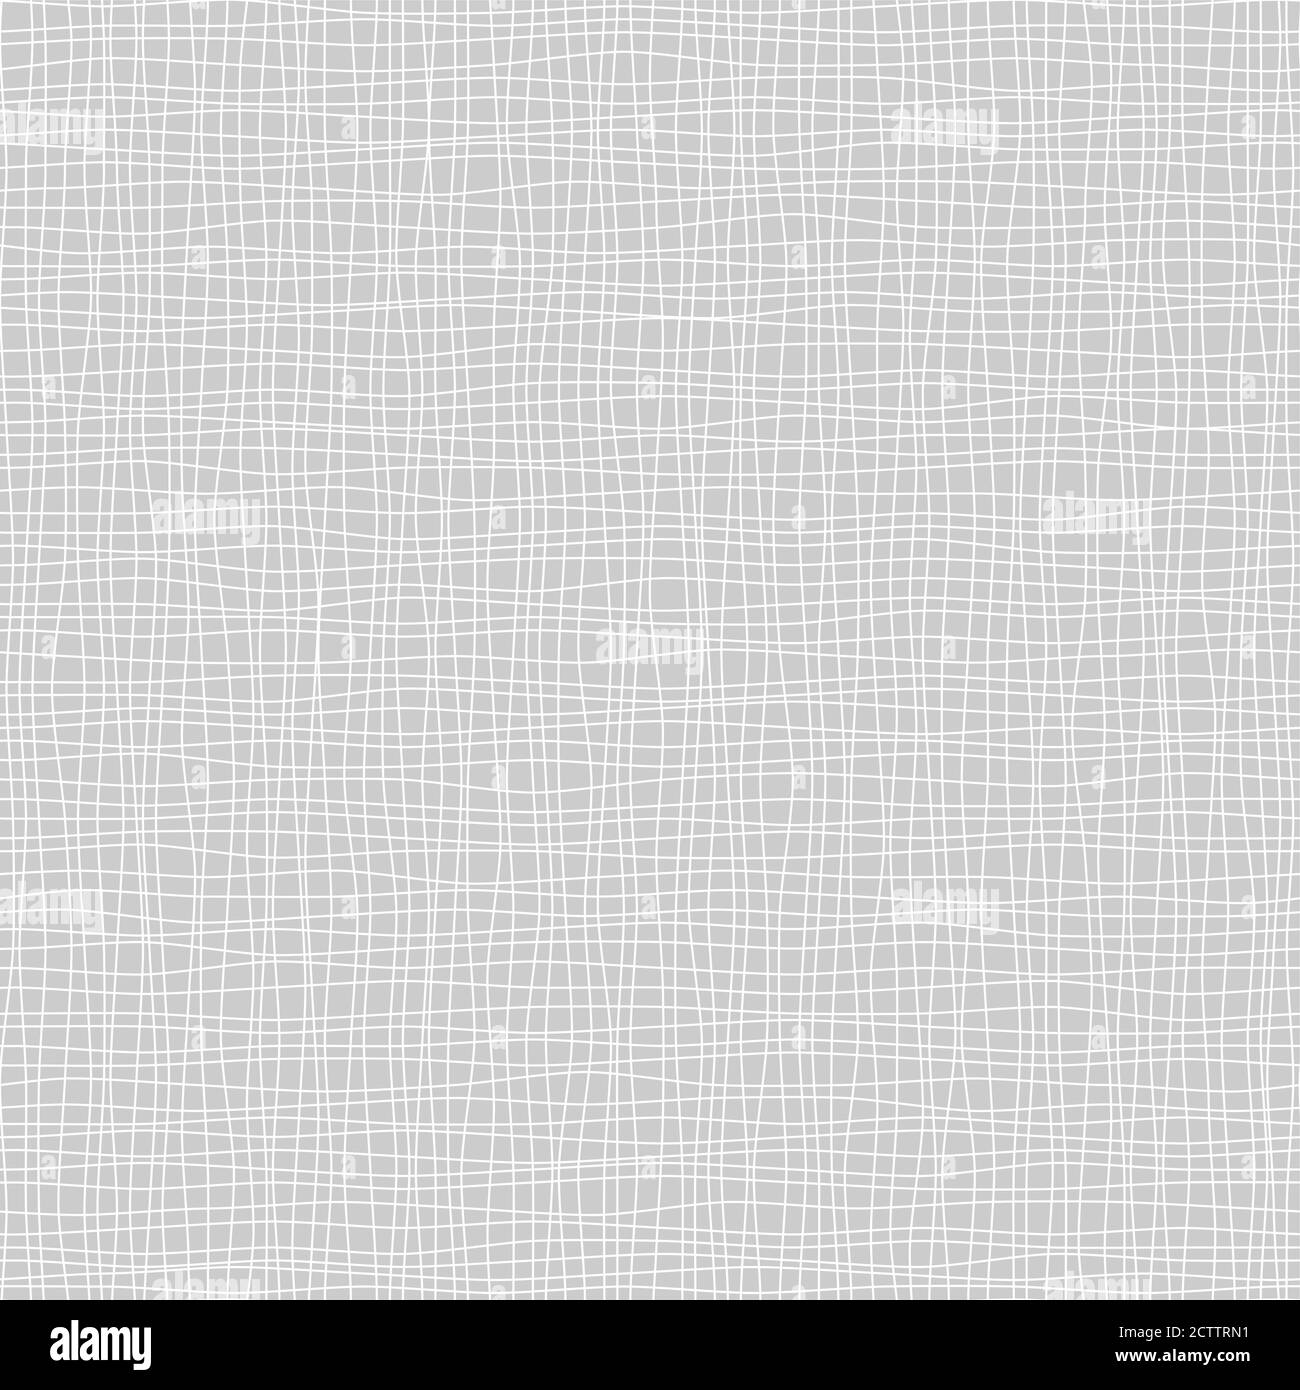 illustration transparente de fichier vectoriel d'arrière-plan abstrait de couleur grise et blanche Illustration de Vecteur